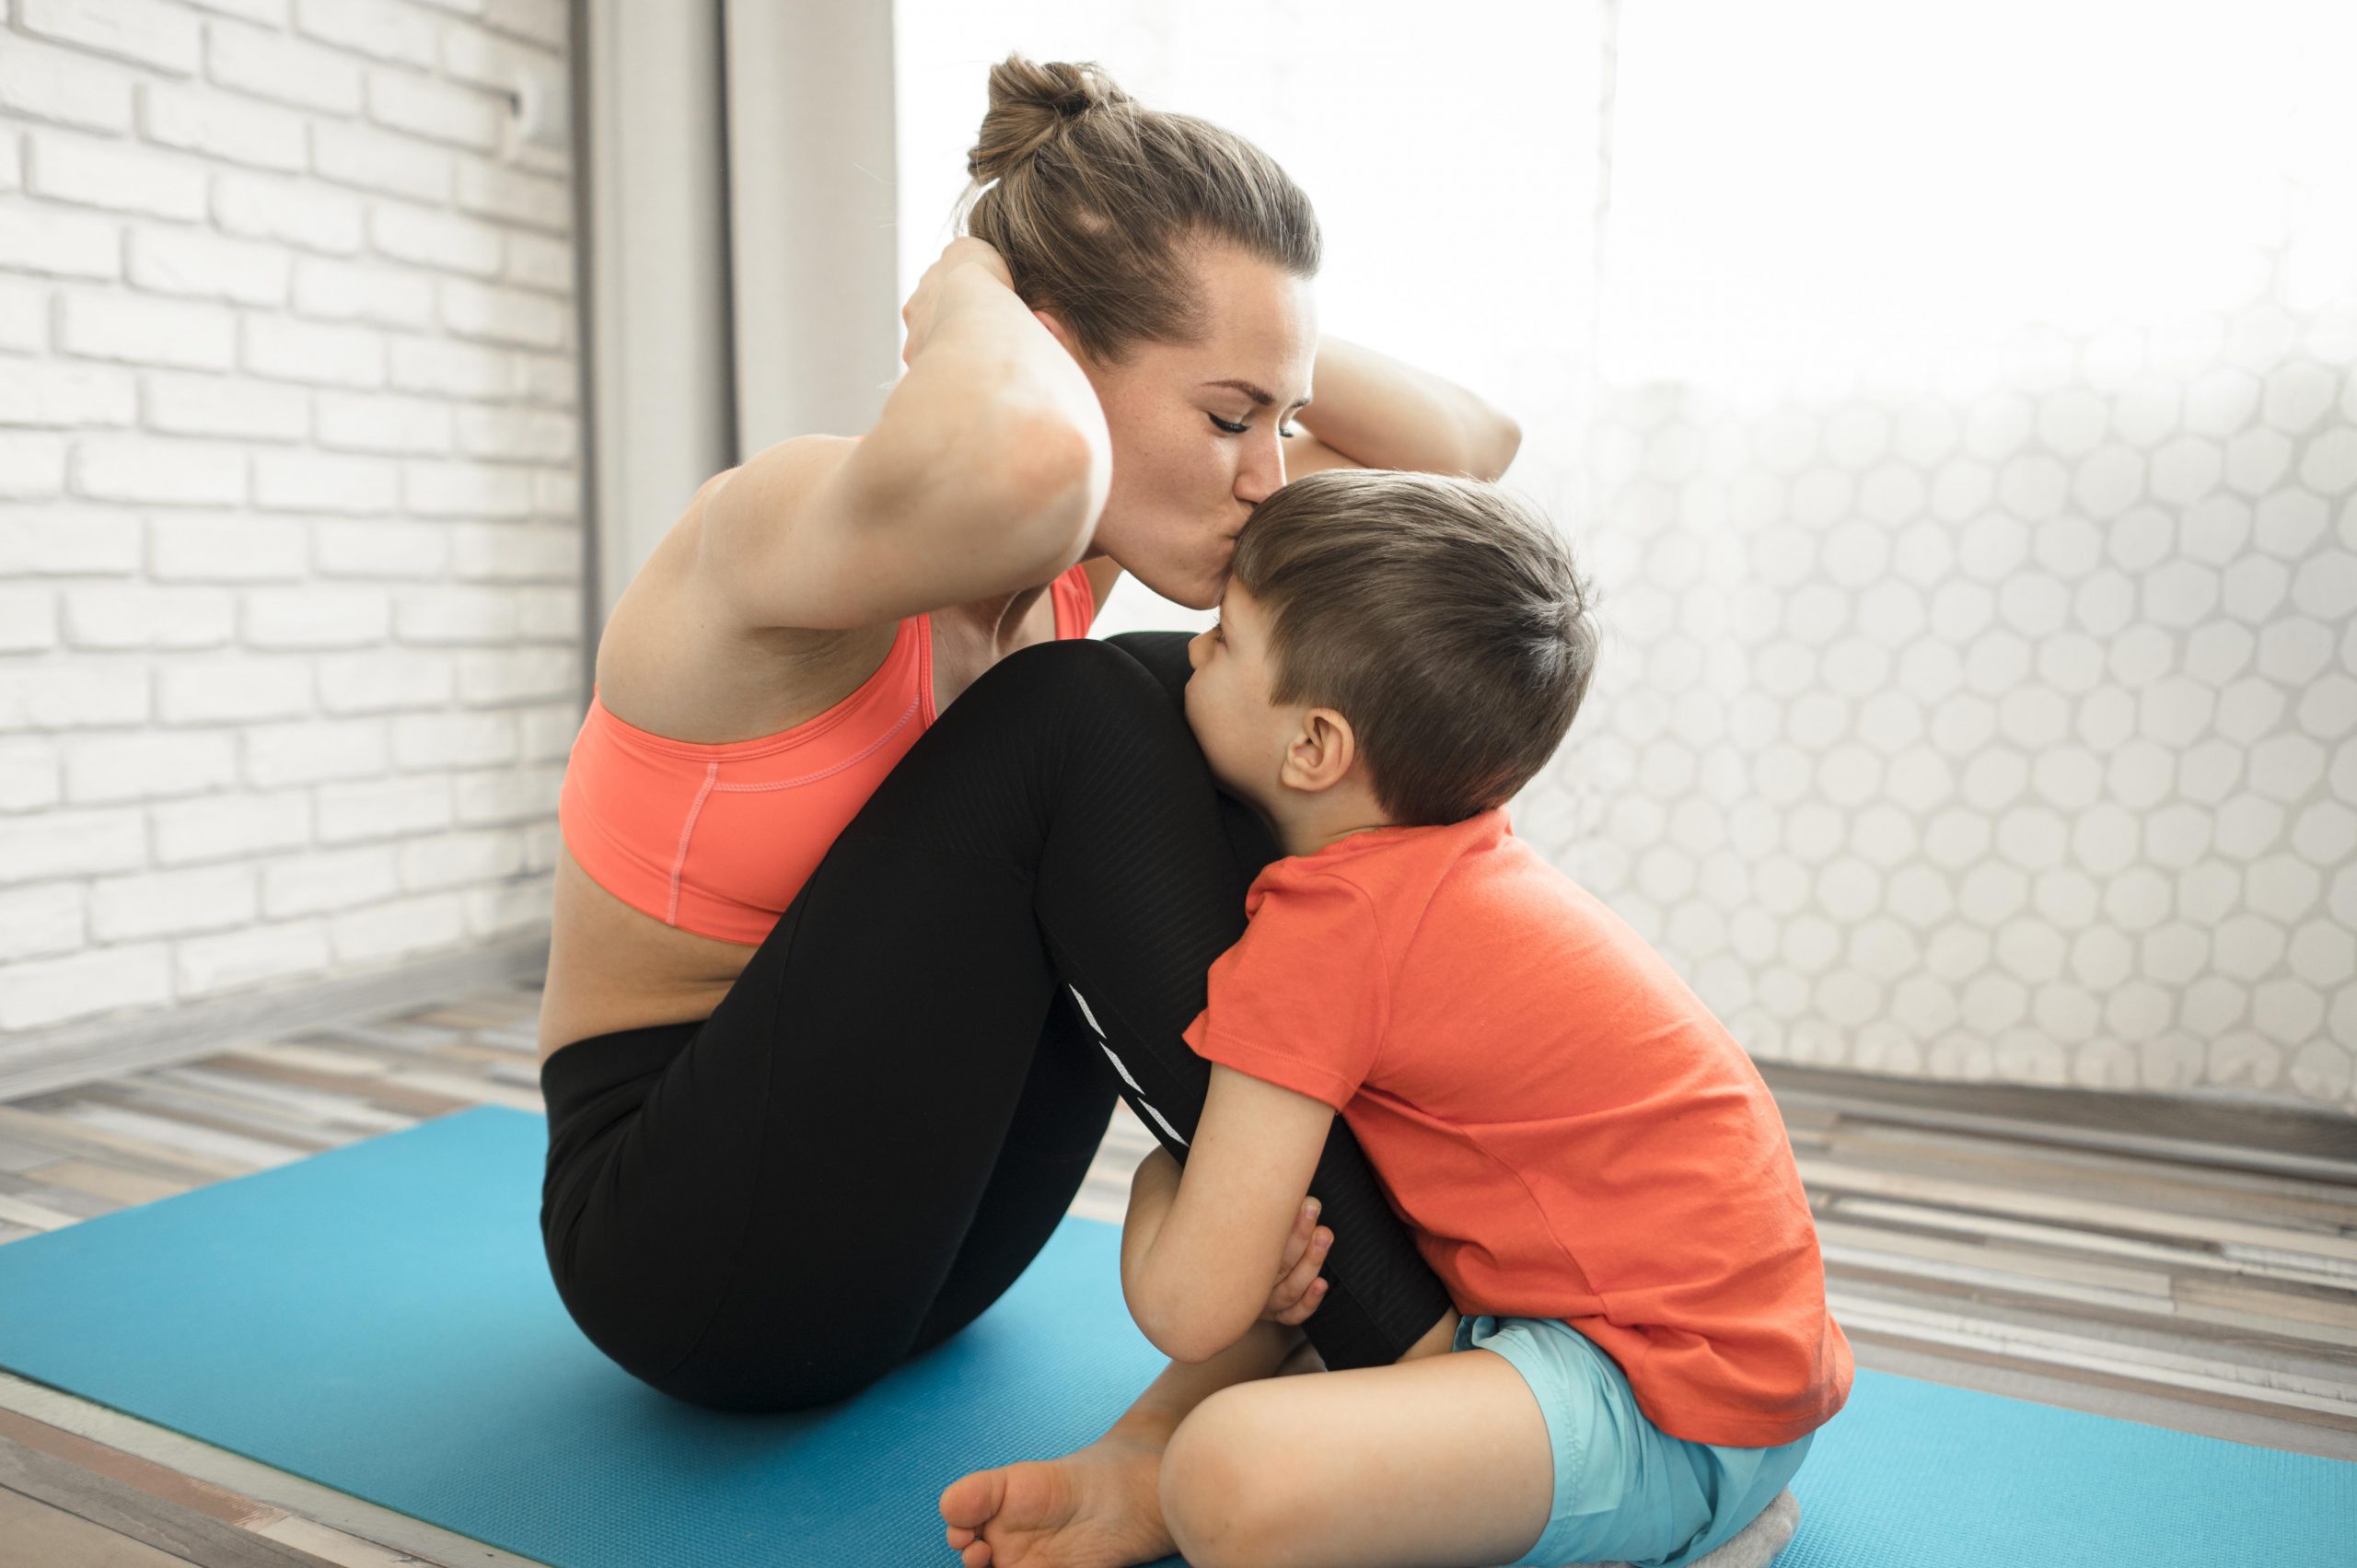 PRO Accesorios - Step de aeróbic profesional ideal para hacer ejercicios en  casa o en el gimnasio. Ayuda a definir la musculatura, mejorar la  flexibilidad y la estabilidad, y también mejora la